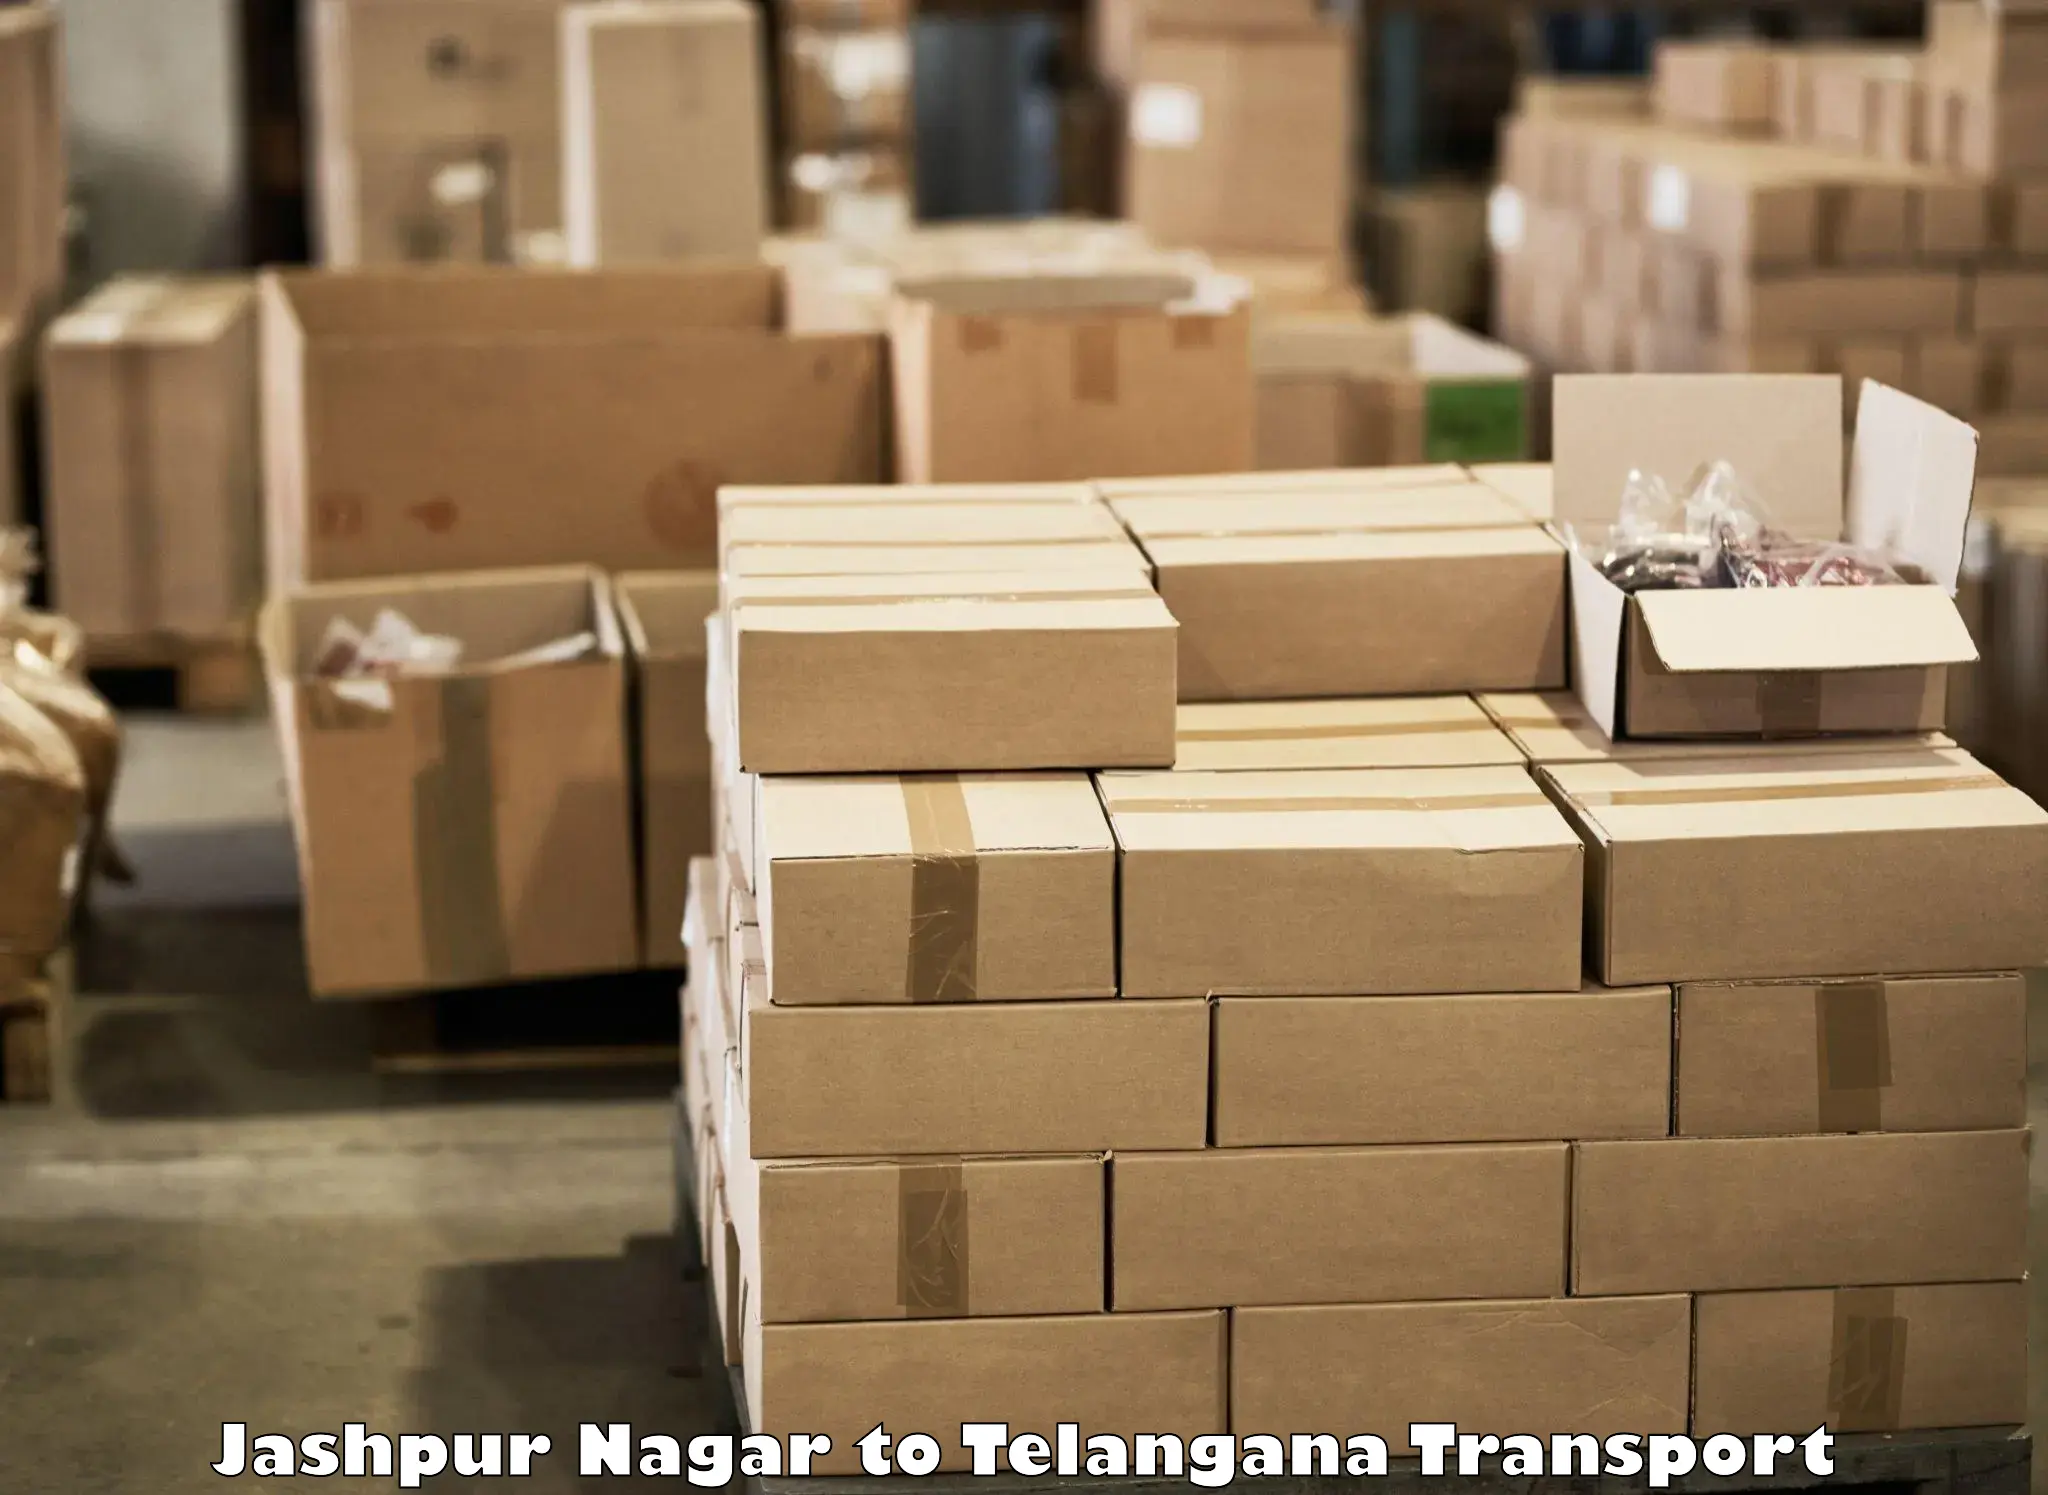 Air freight transport services Jashpur Nagar to Madhavaram